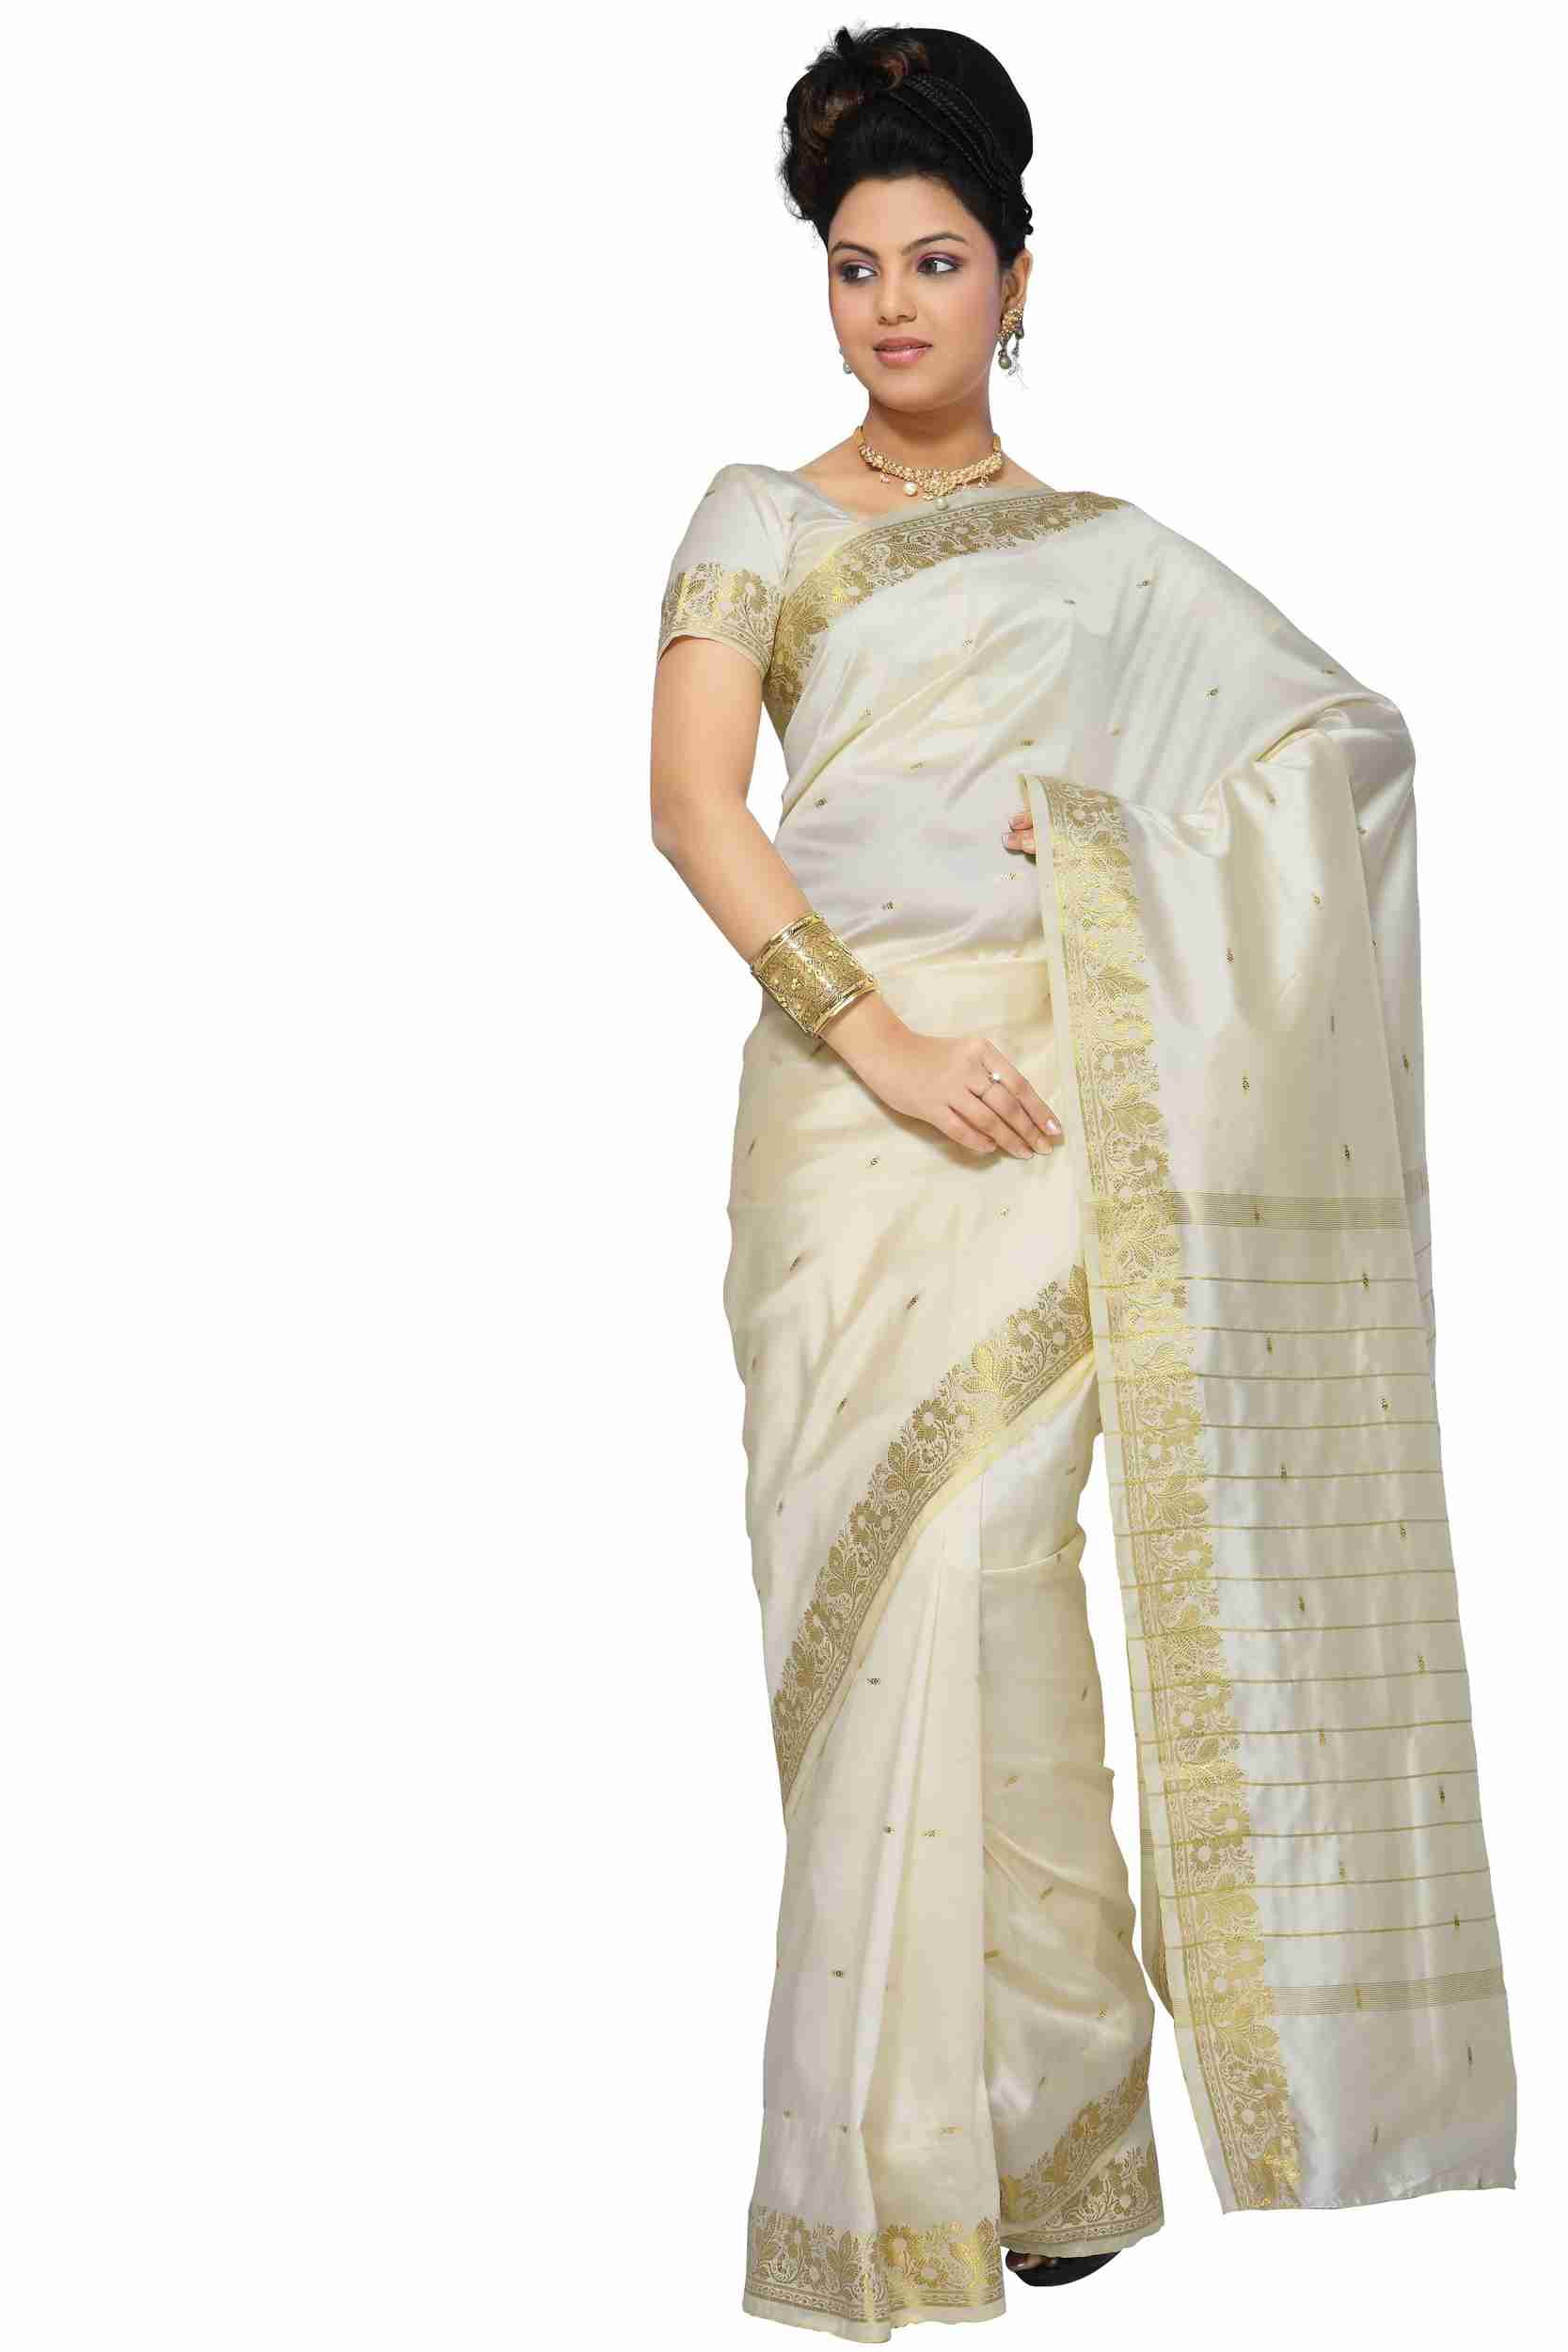 4 Piece Cream Art Silk Sari, Saree, Wrap, custom blouse & petticoat, Bindi  